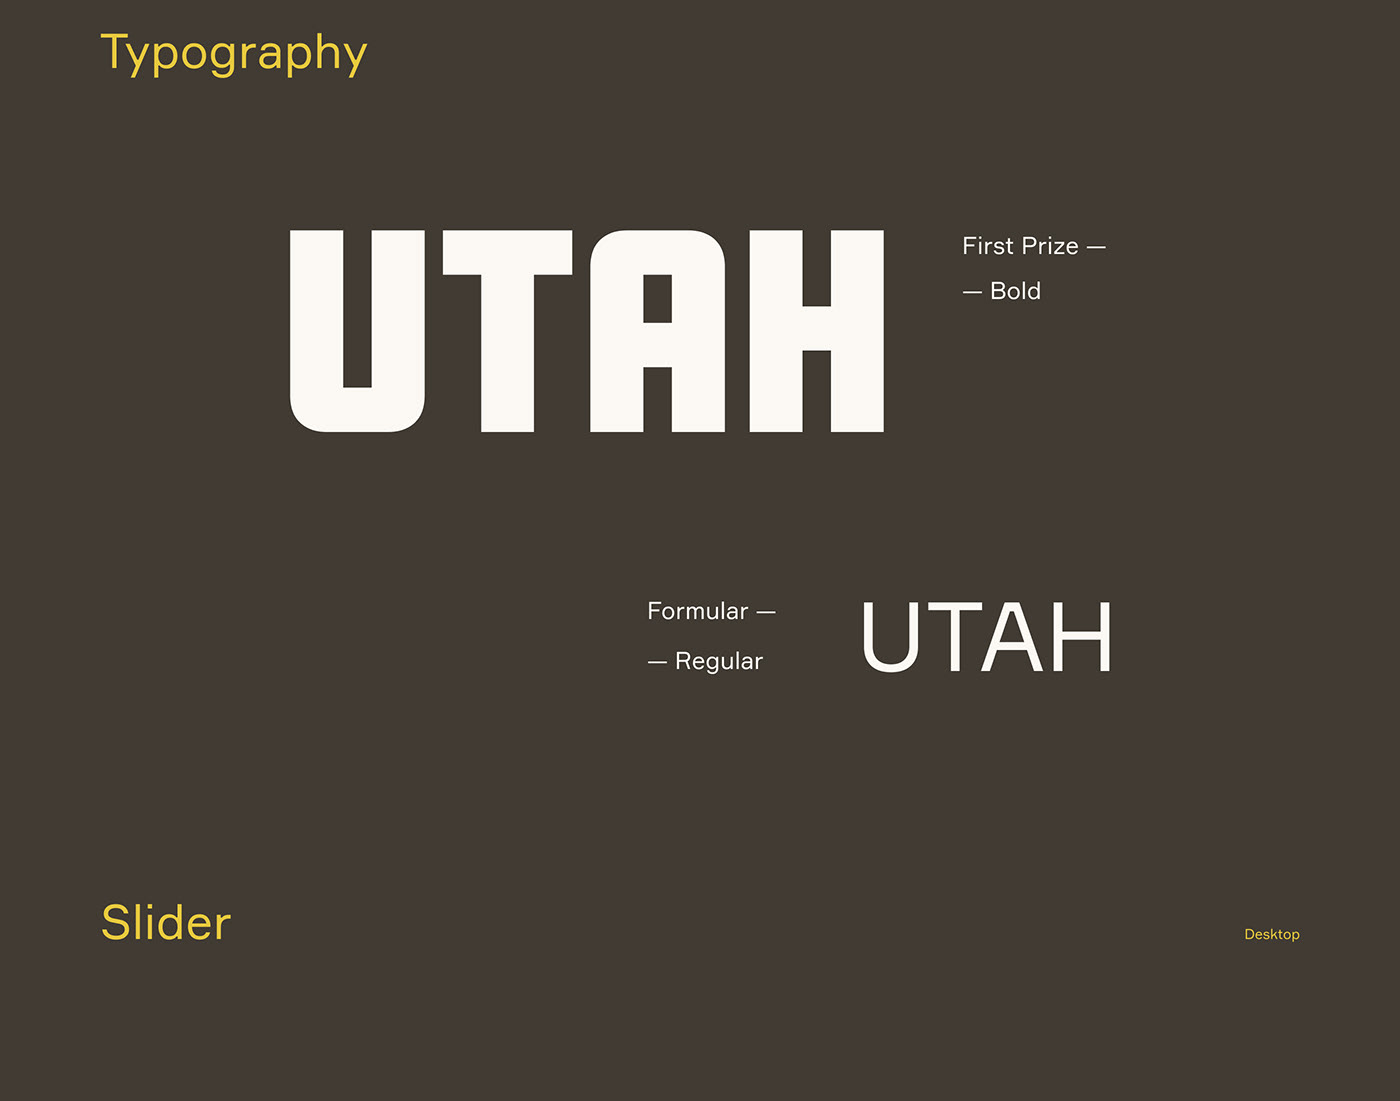 Utah / Travel Agency Website on Behance